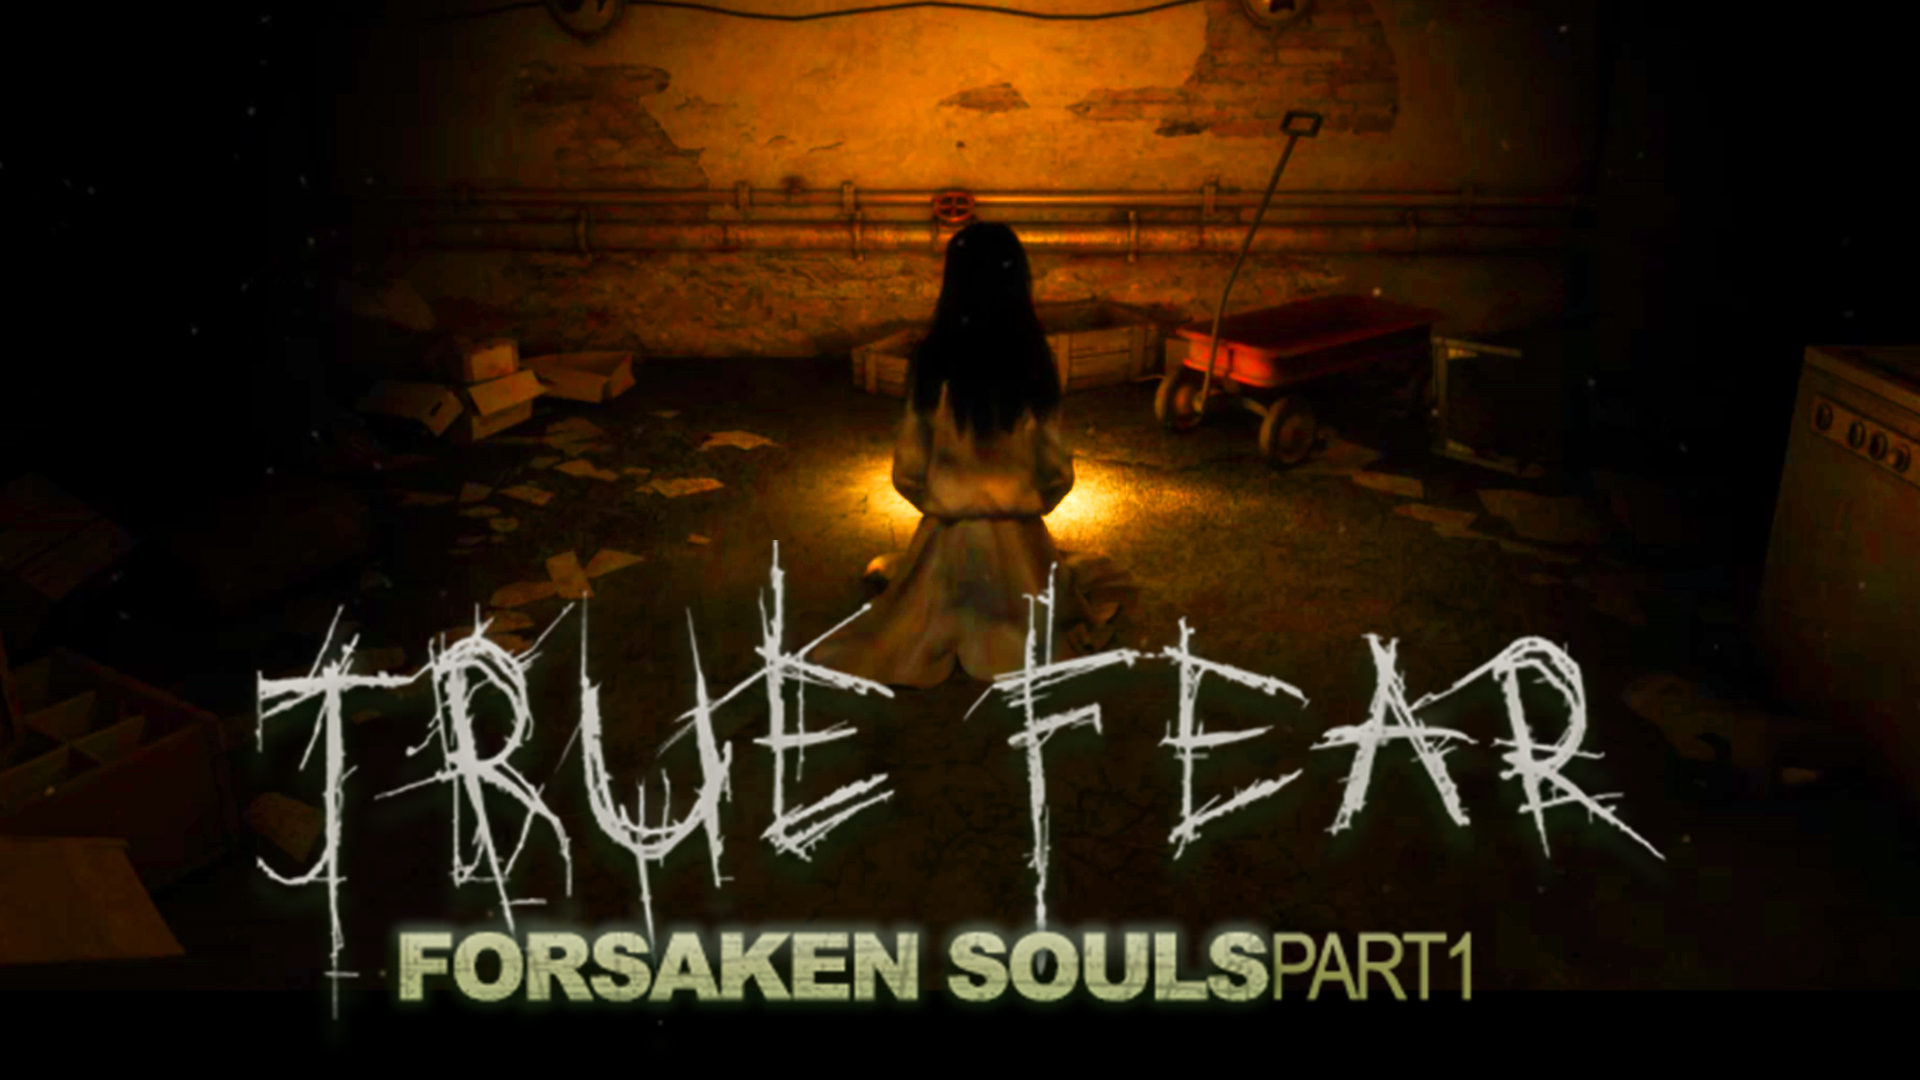 Forsaken souls 3. True Fear: Forsaken Souls Part.